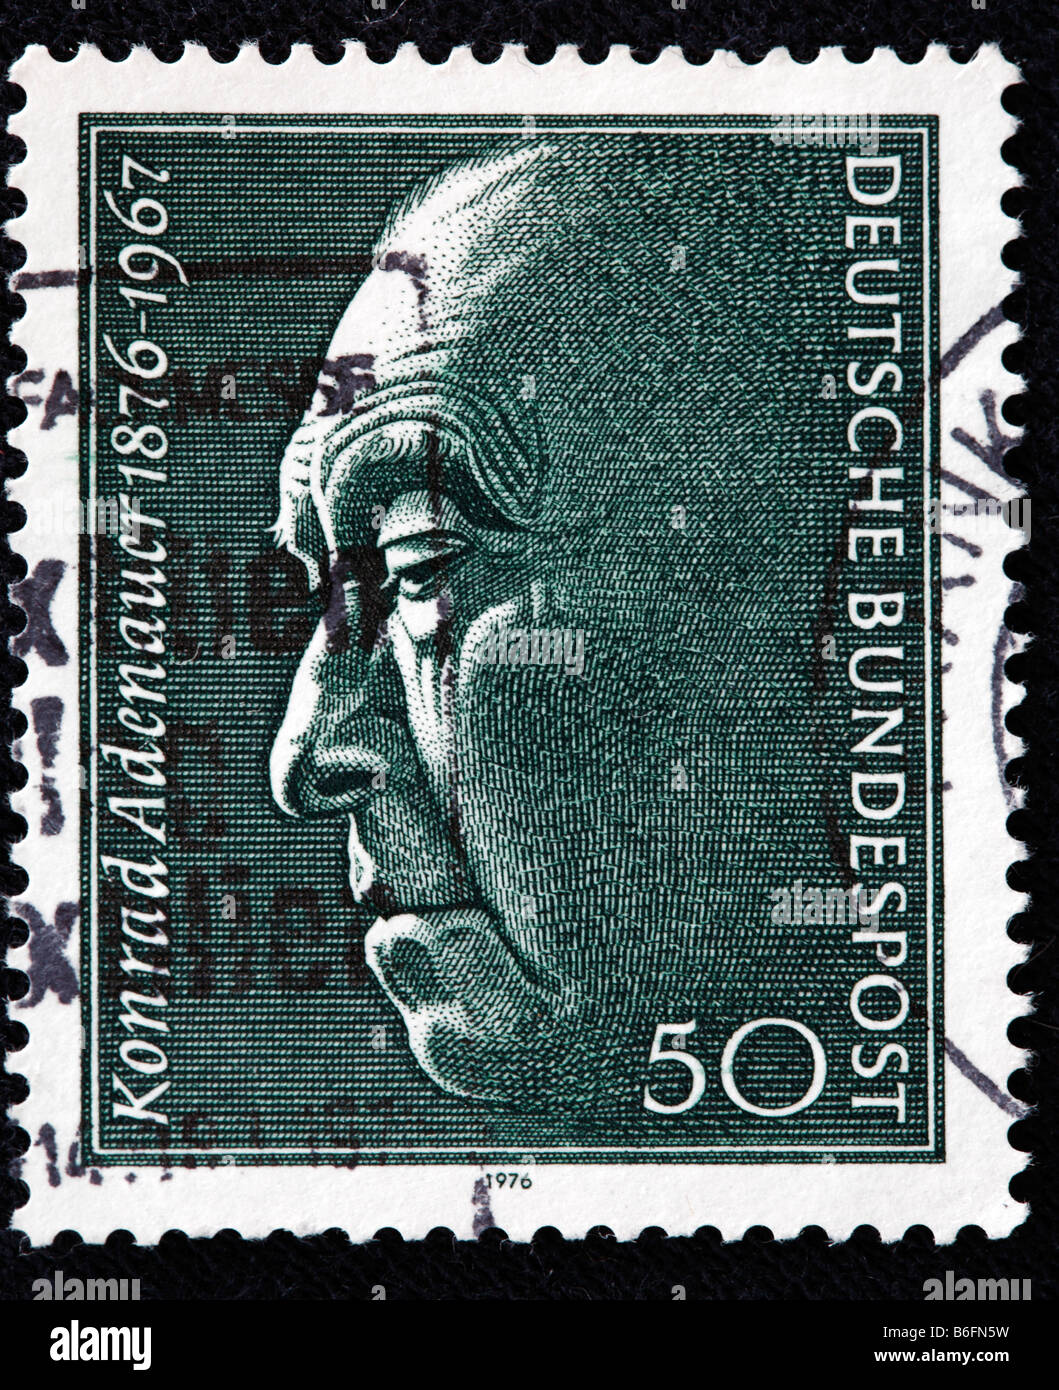 Konrad ADENAUER, cancelliere della Germania Ovest (1949-1963), francobollo, Germania, 1976 Foto Stock